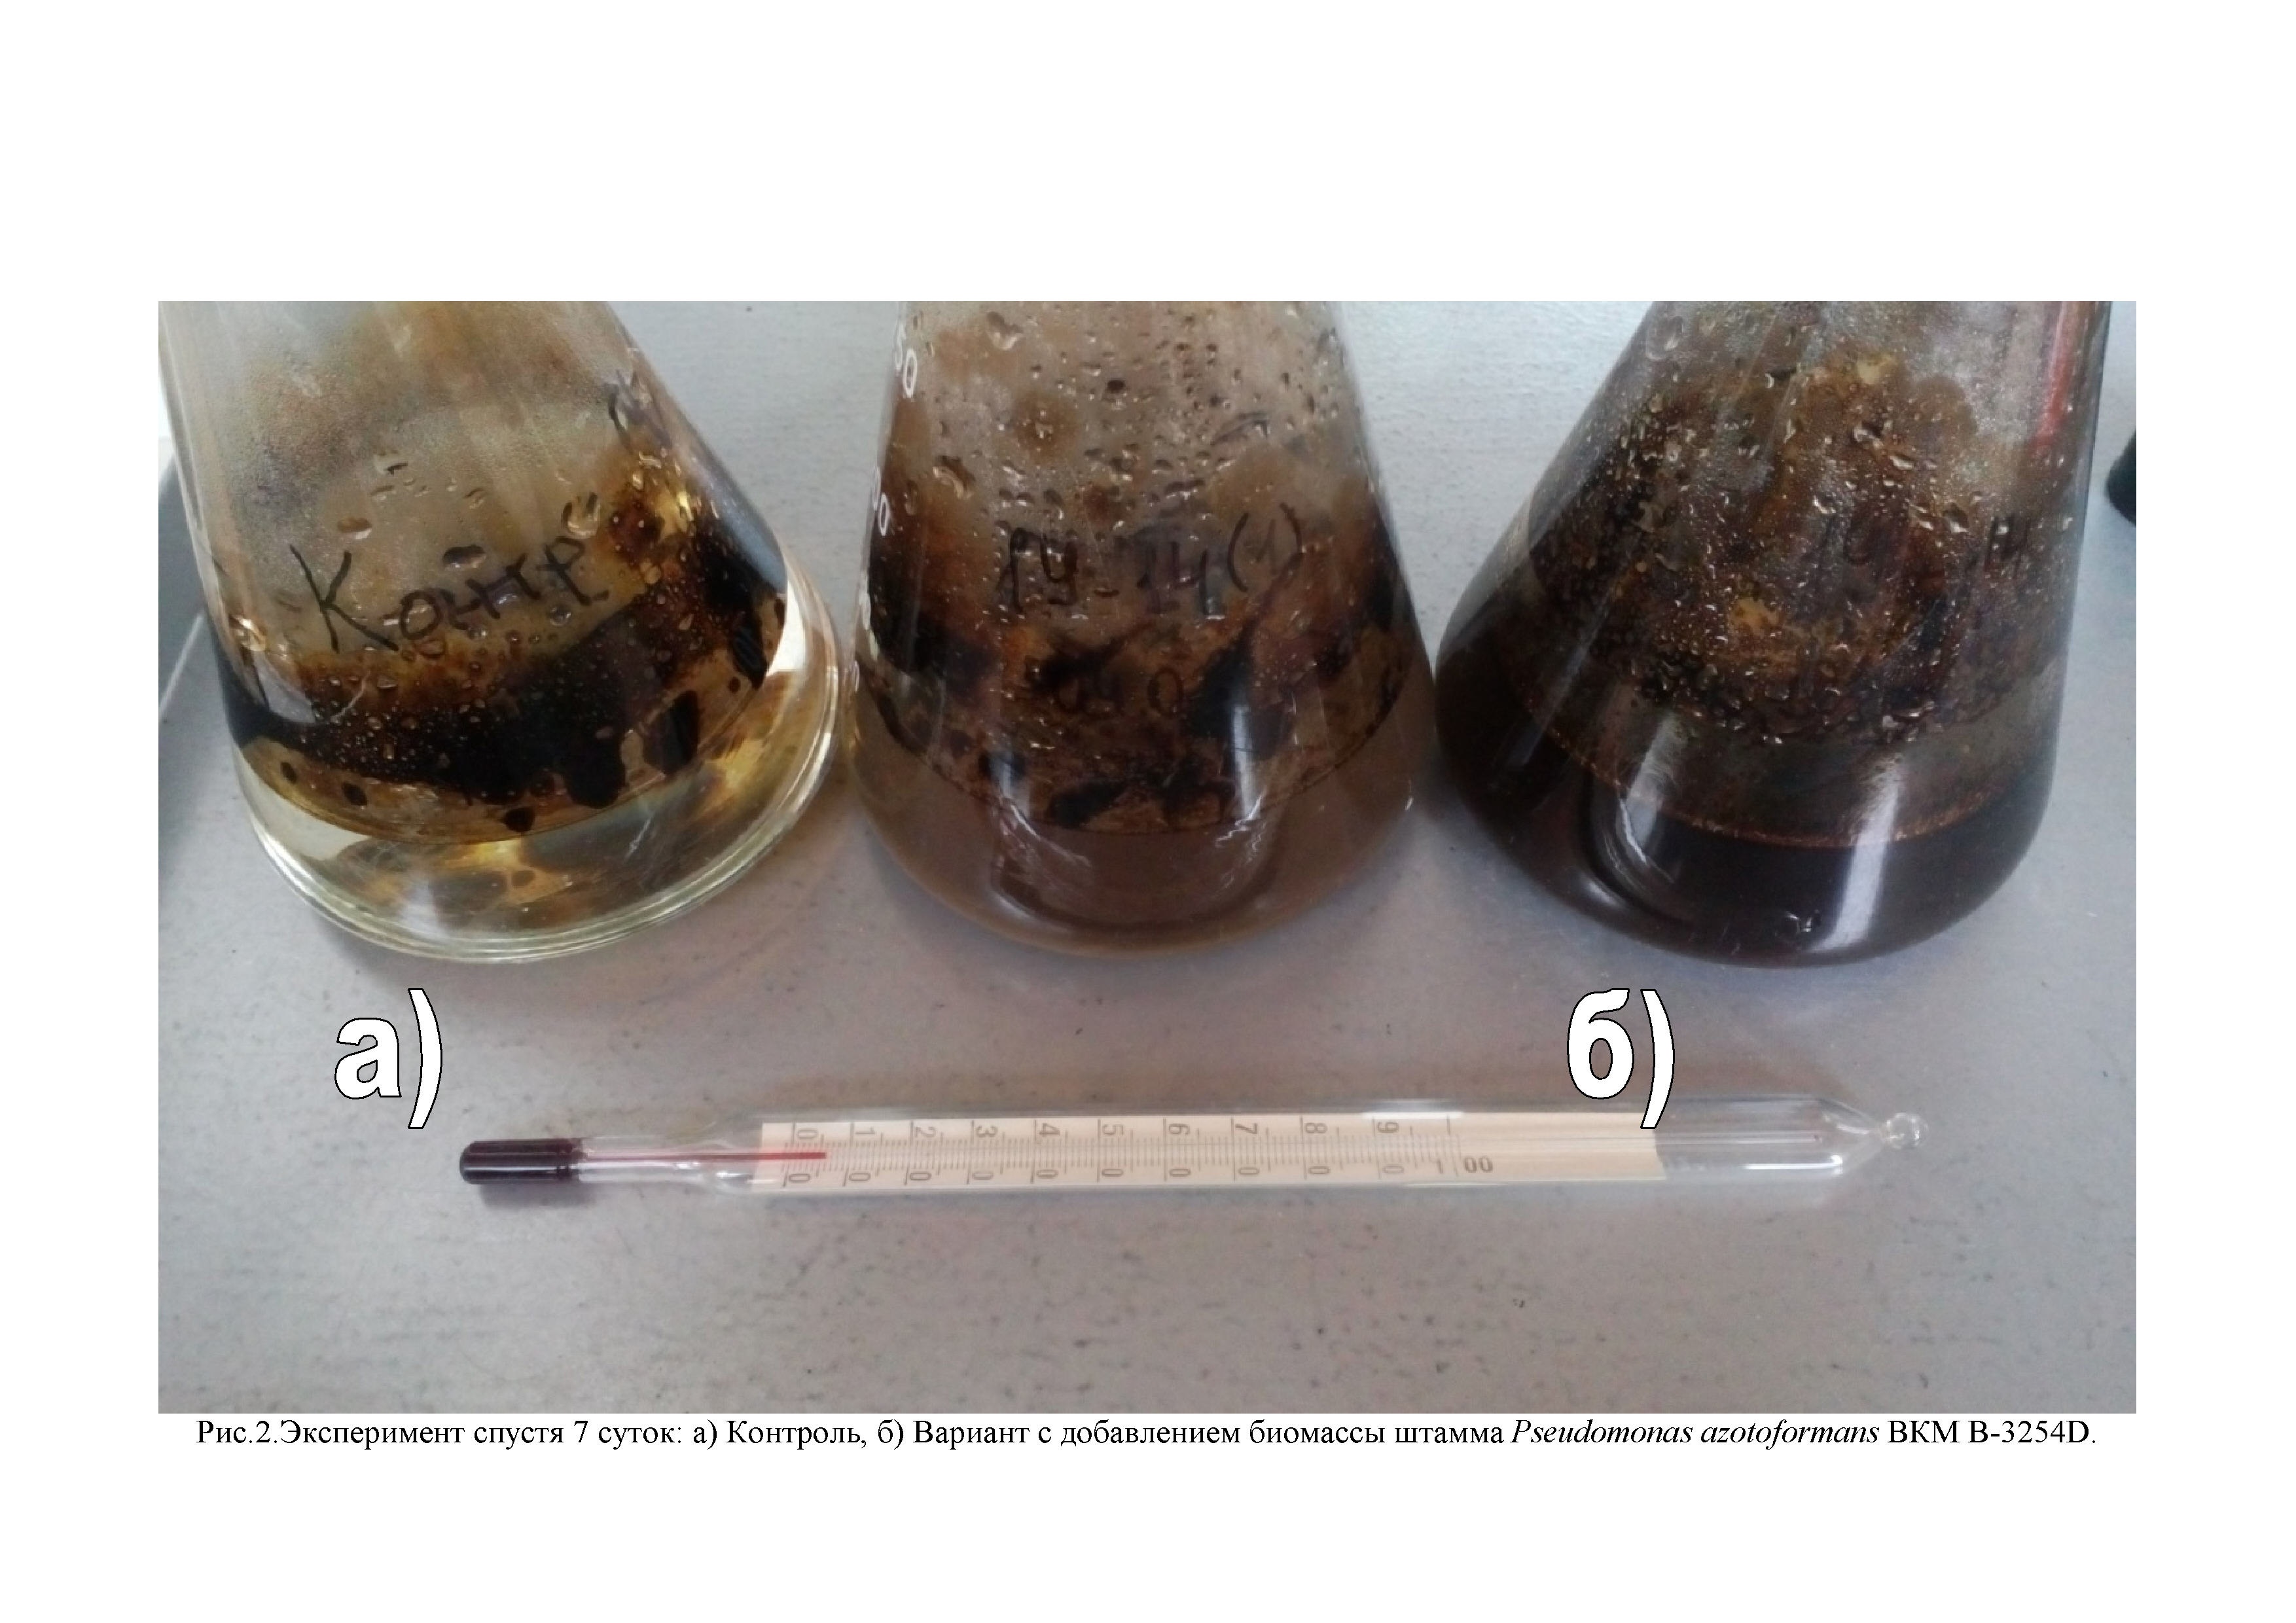 Штамм бактерий Pseudomonas azotoformans для биоконверсии углеводородов из загрязненных нефтью и нефтепродуктами вод в источник биодизеля